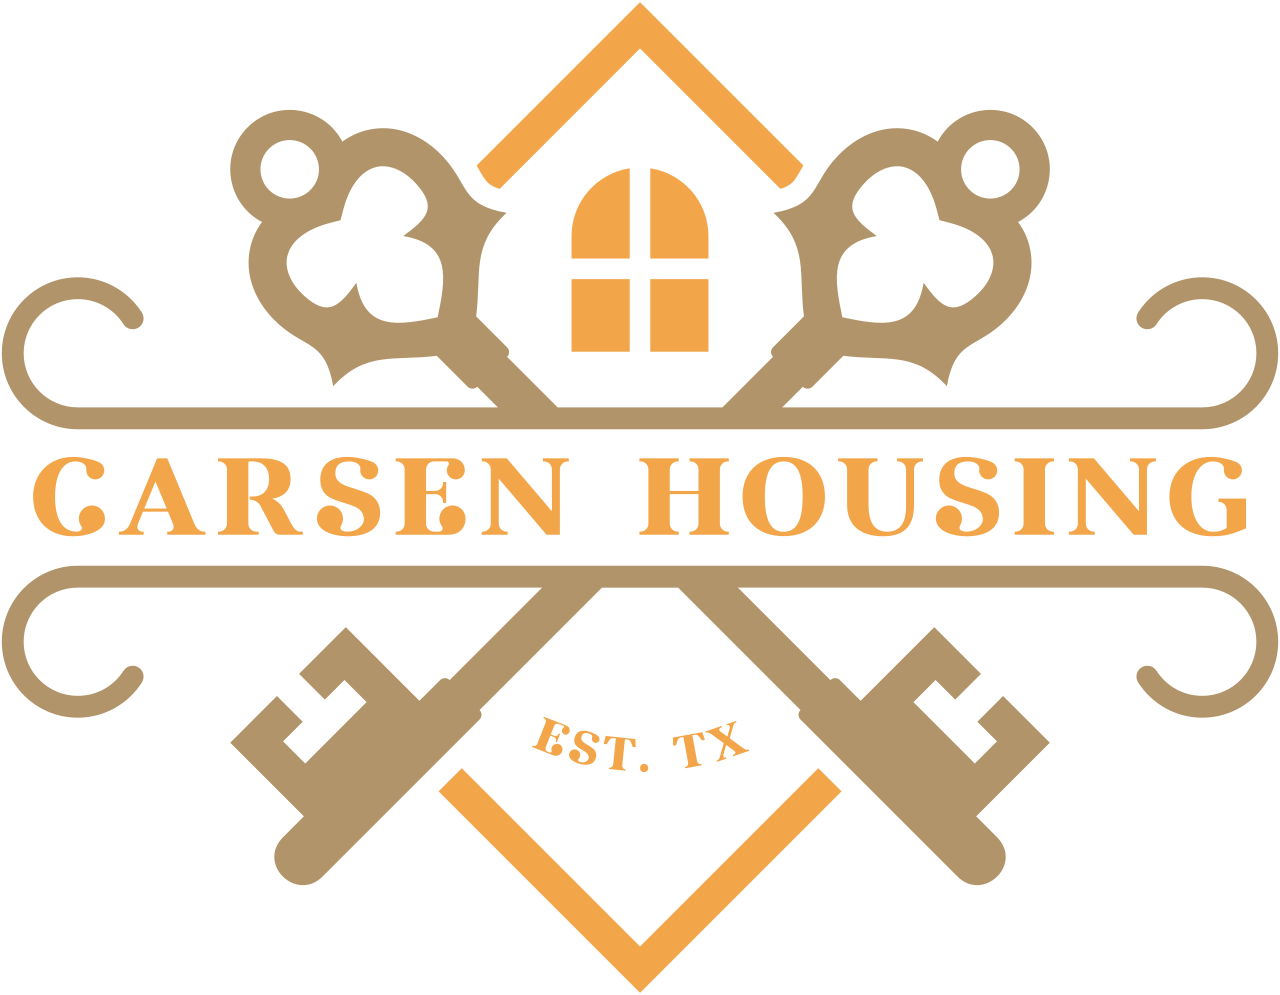 Carsen Housing's logo